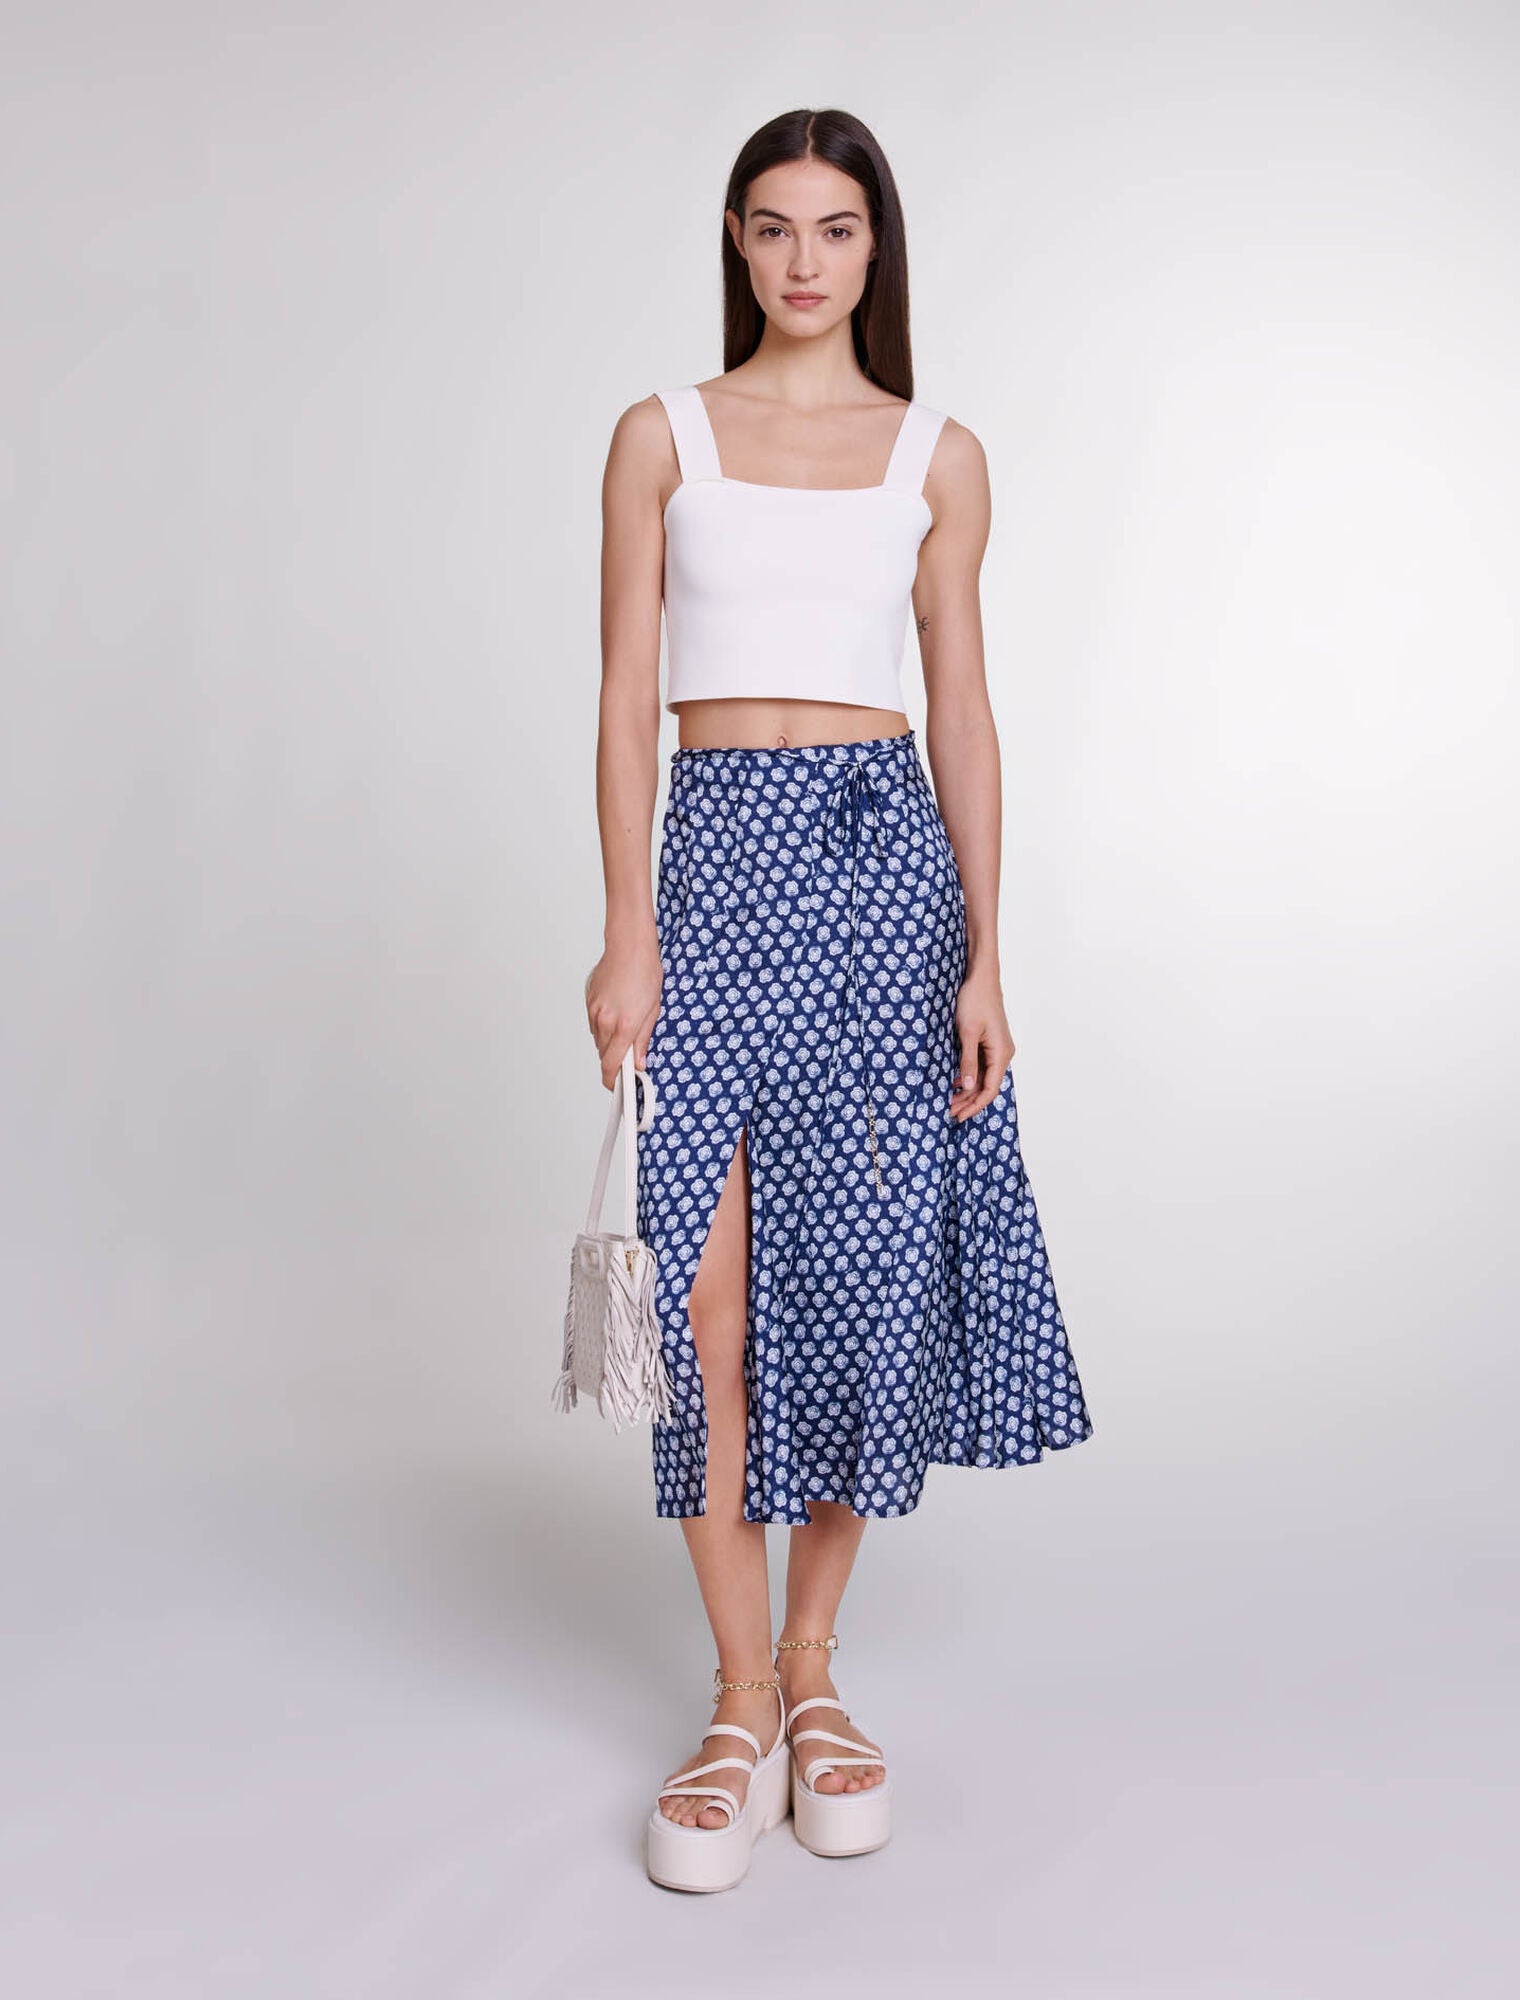 Clover Navy/Ecru featured Mid-length satin-effect skirt